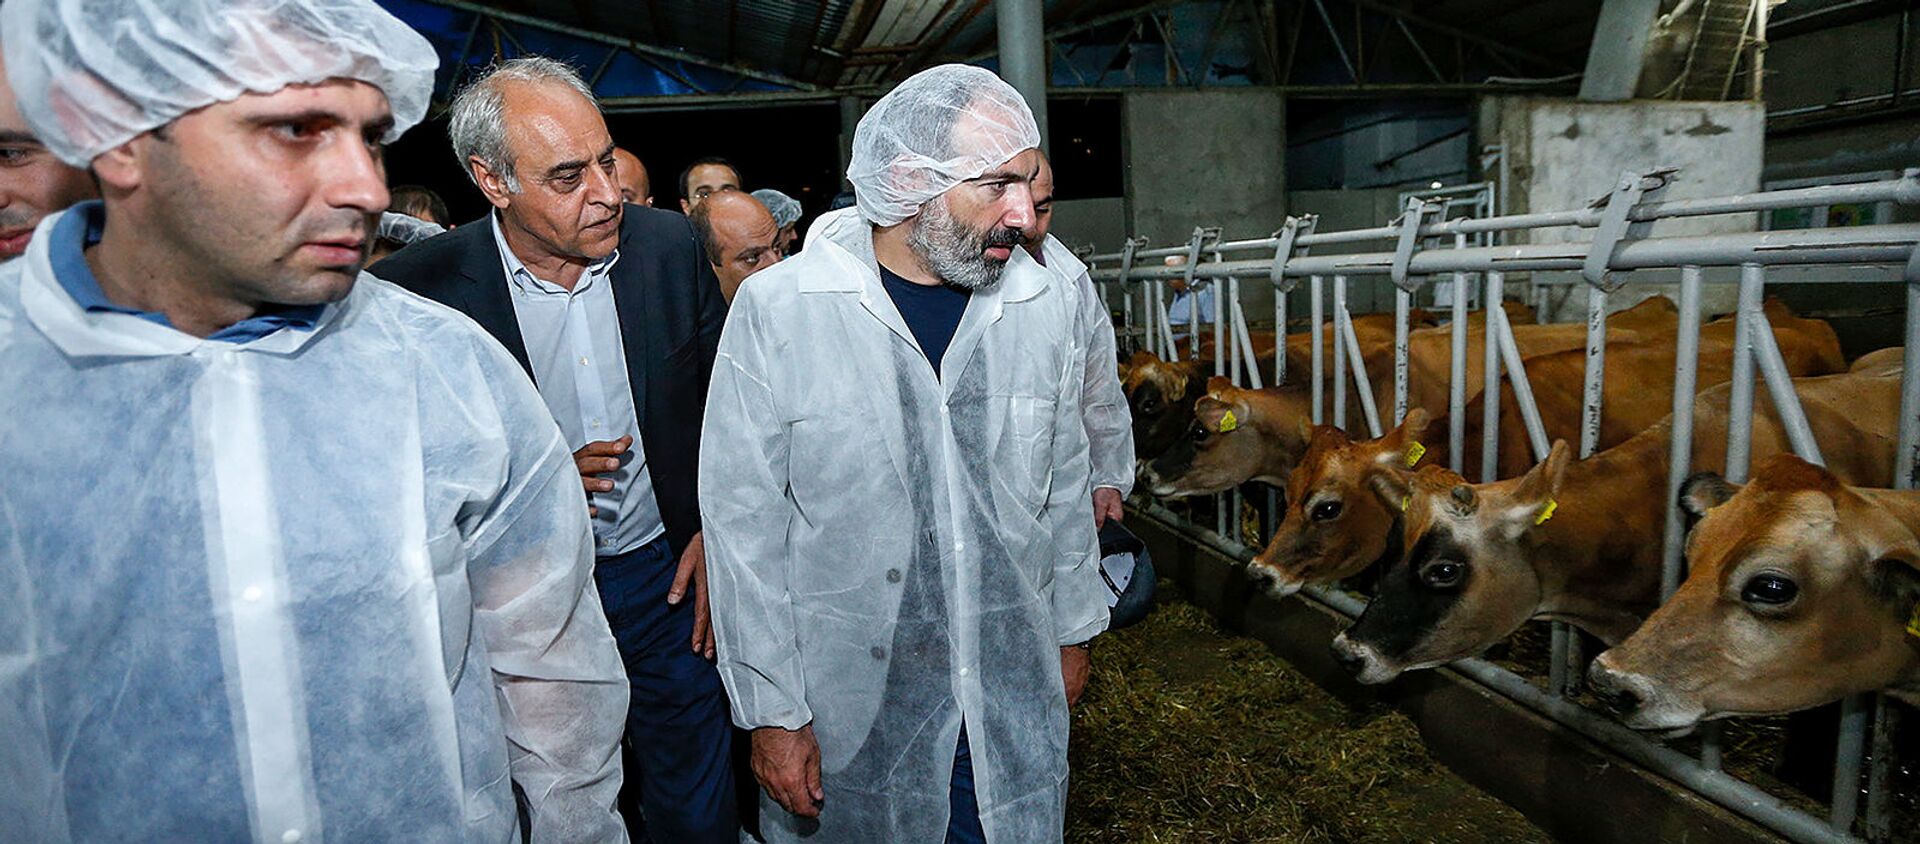 Никол Пашинян посетил животноводческую ферму (10 августа 2018). Лусадзор, Тавуш - Sputnik Армения, 1920, 09.12.2019